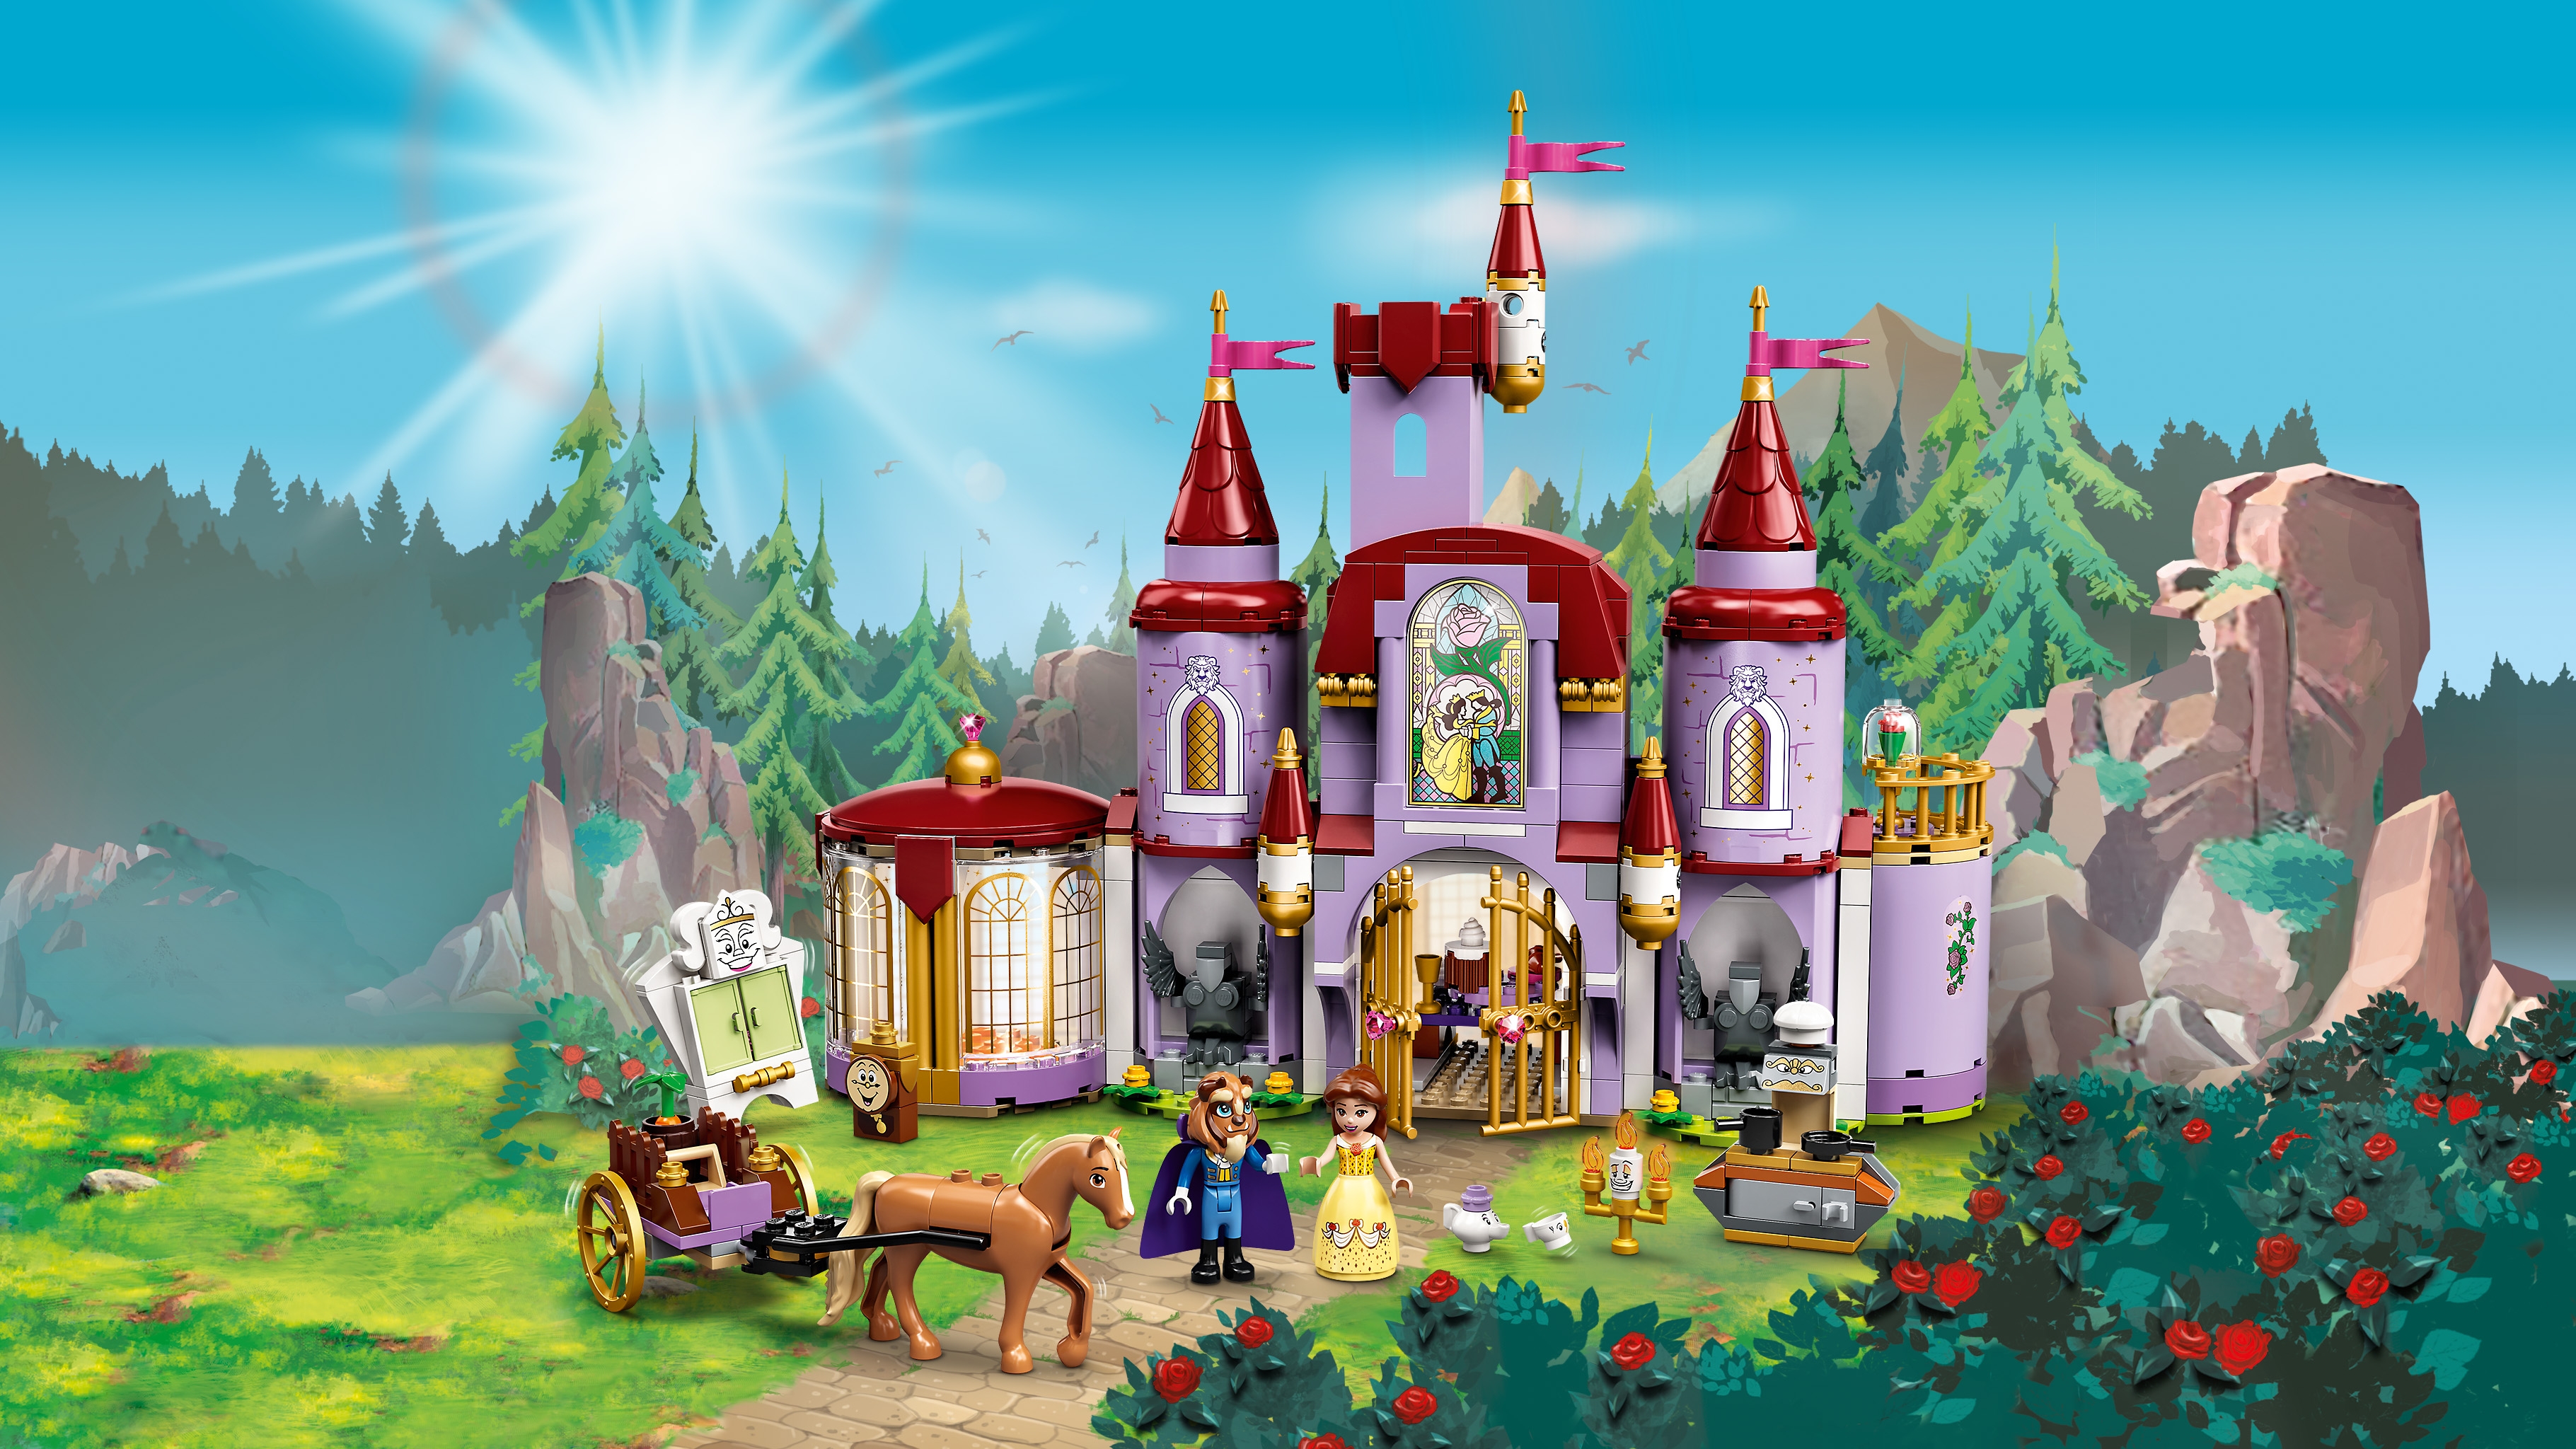 ベルと野獣のお城 43196 - レゴ® |ディズニーセット - LEGO.comキッズ